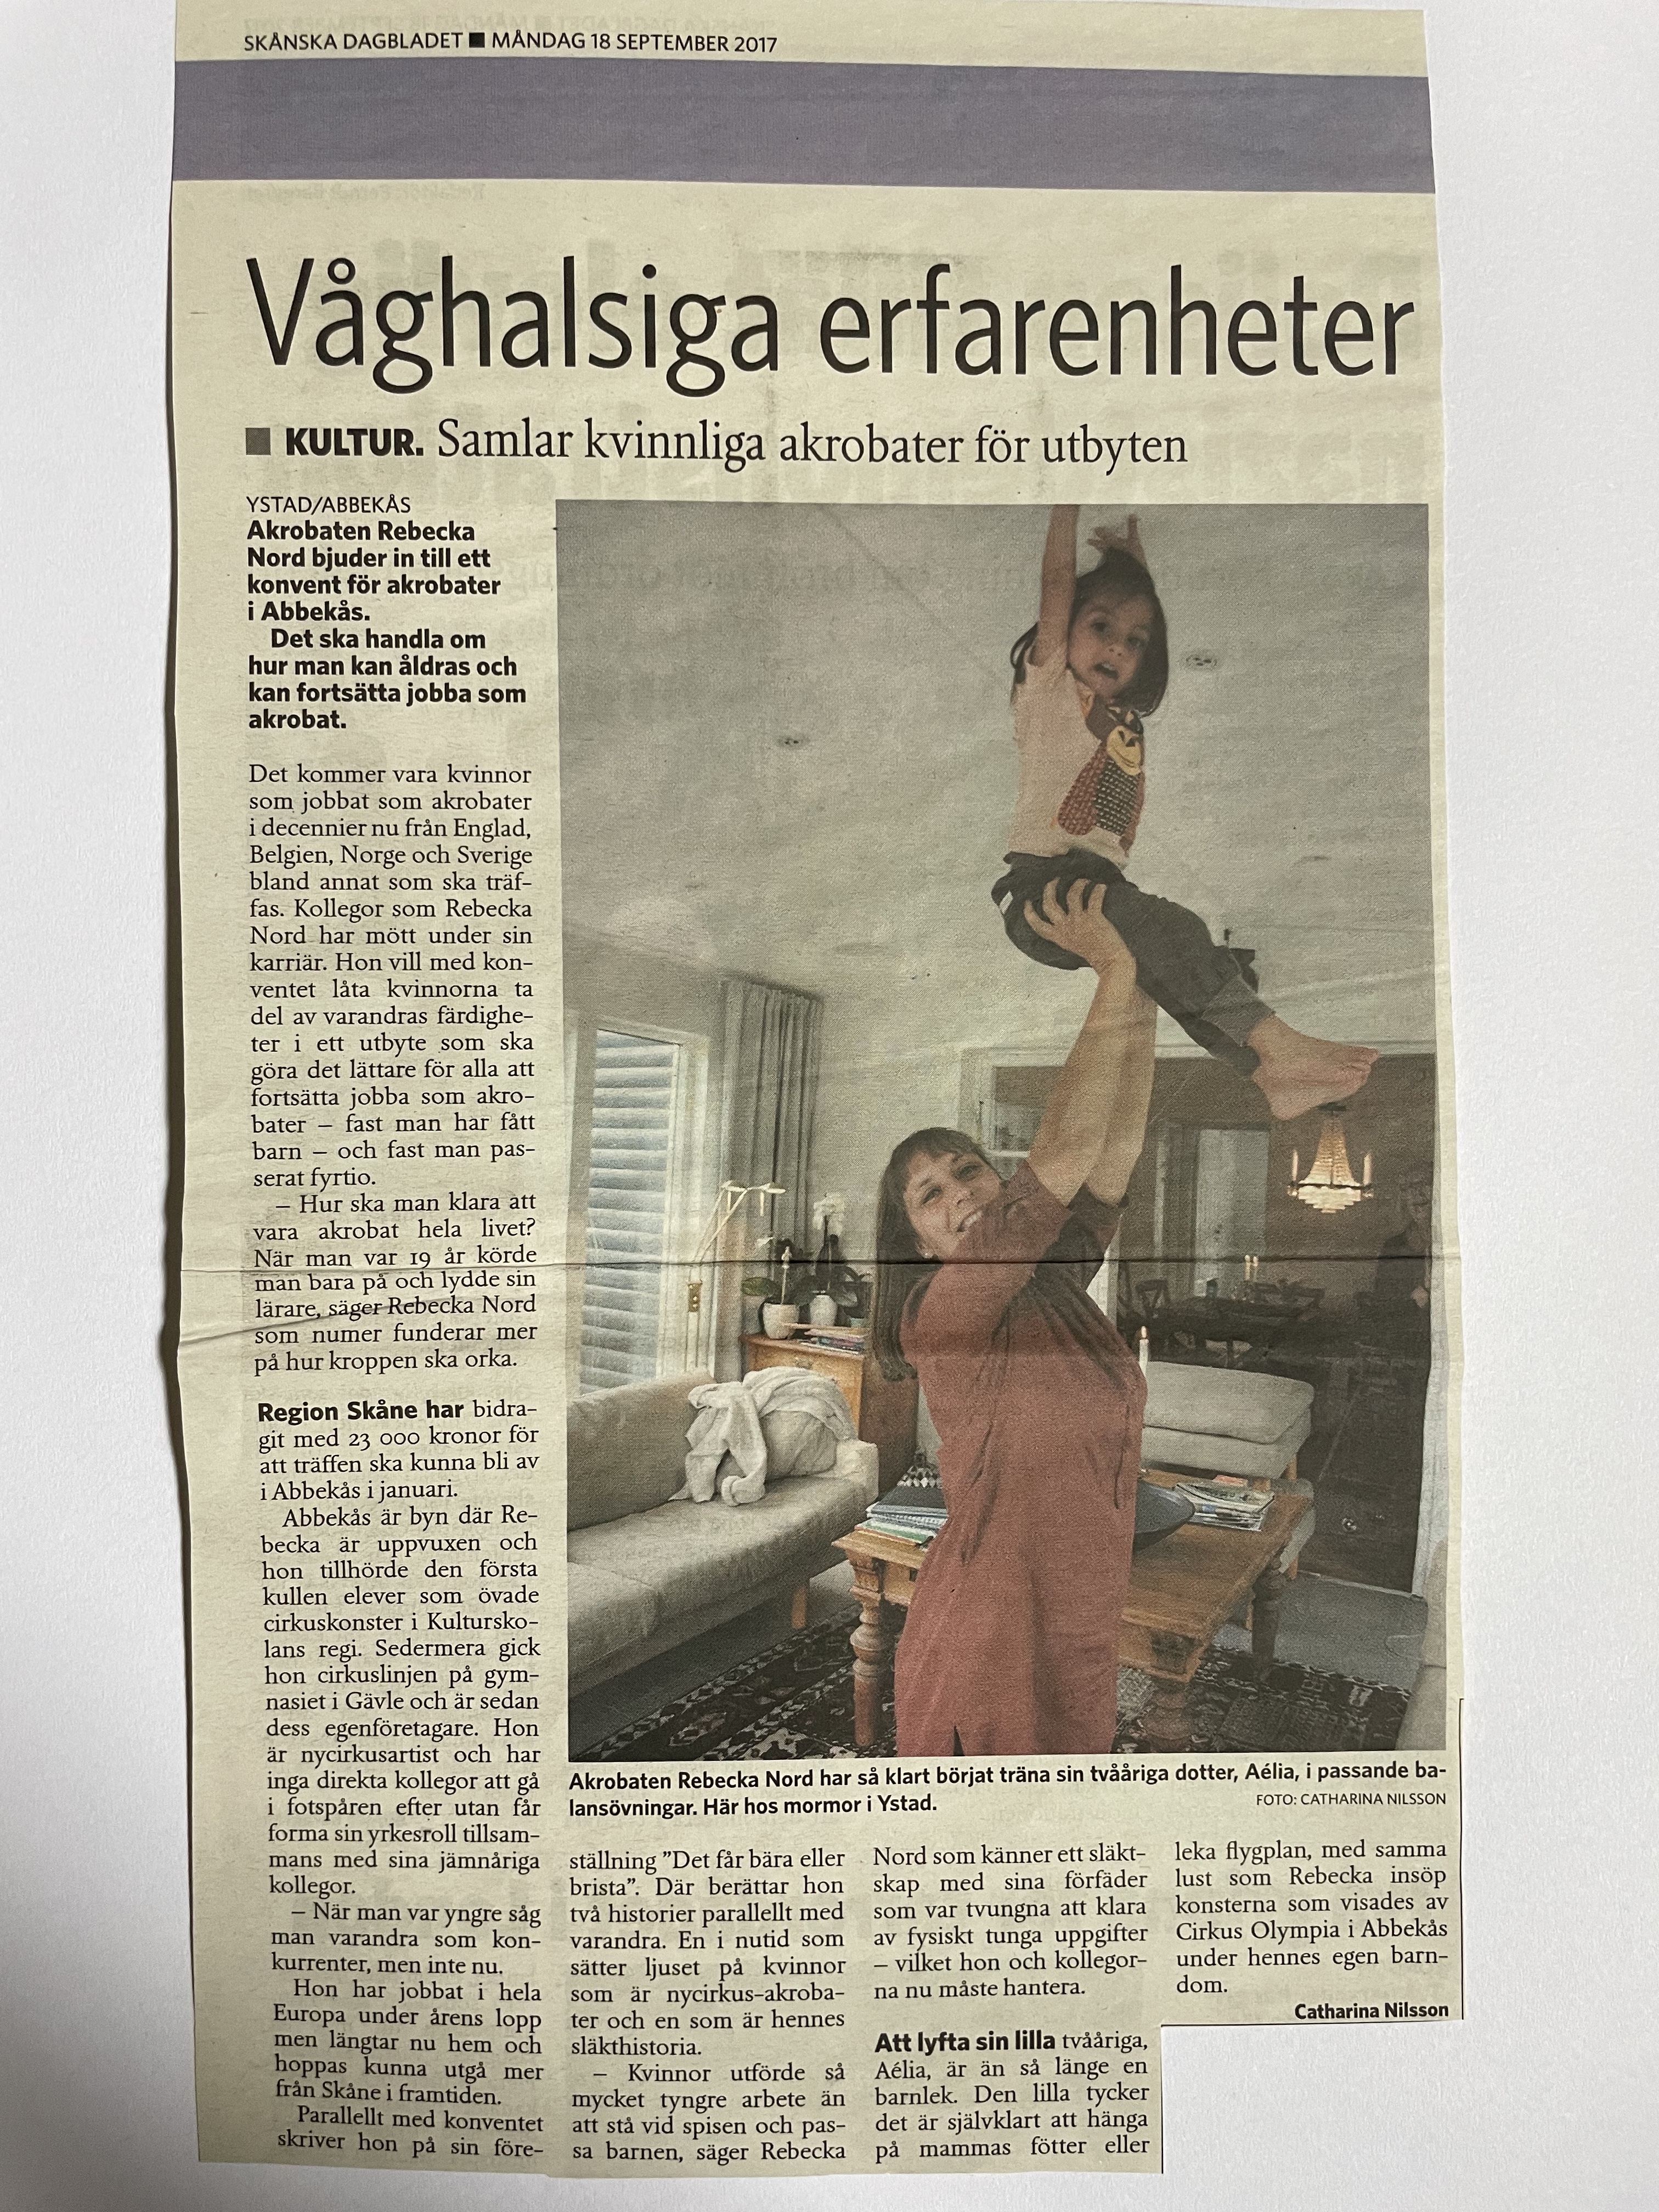 Rebecka Nord Skånska Dagbladet 2017